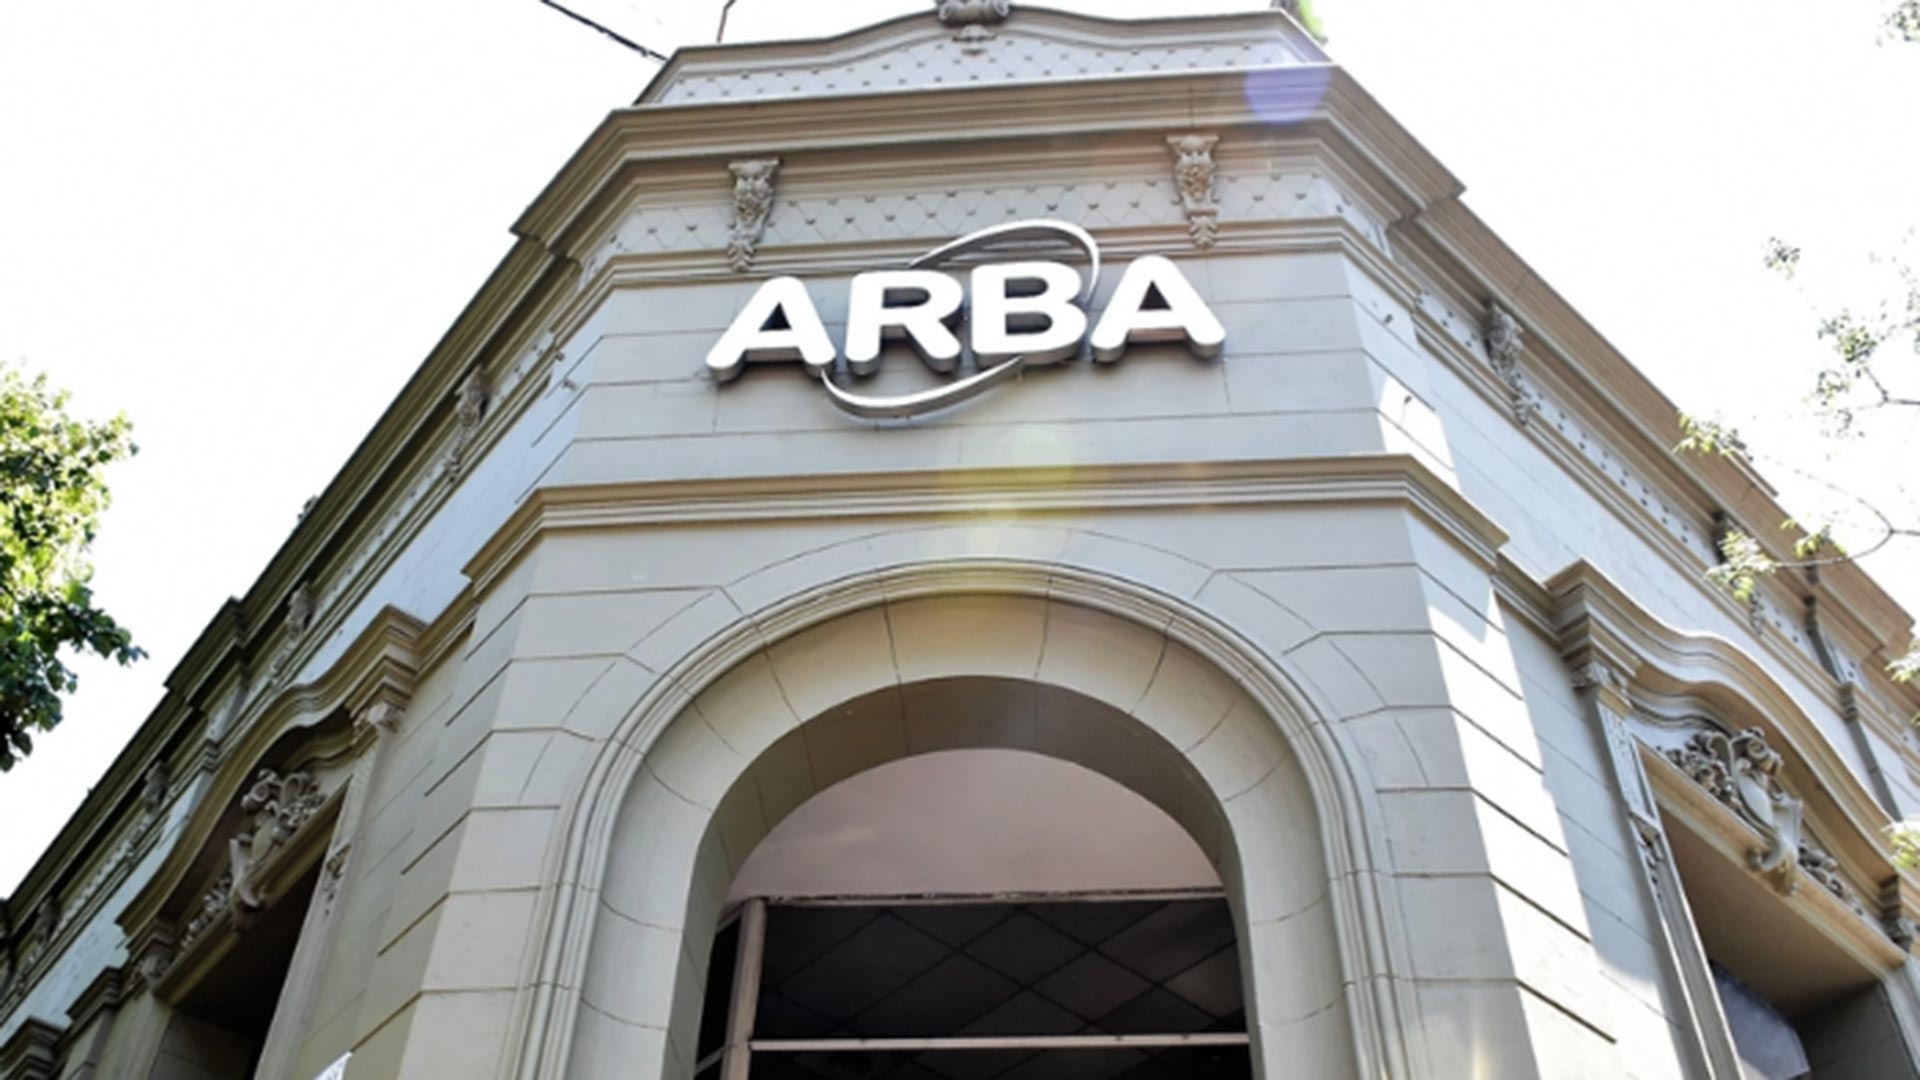 La Agencia de Recaudación de la provincia de Buenos Aires (ARBA) intimó a responsables de partidas rurales 